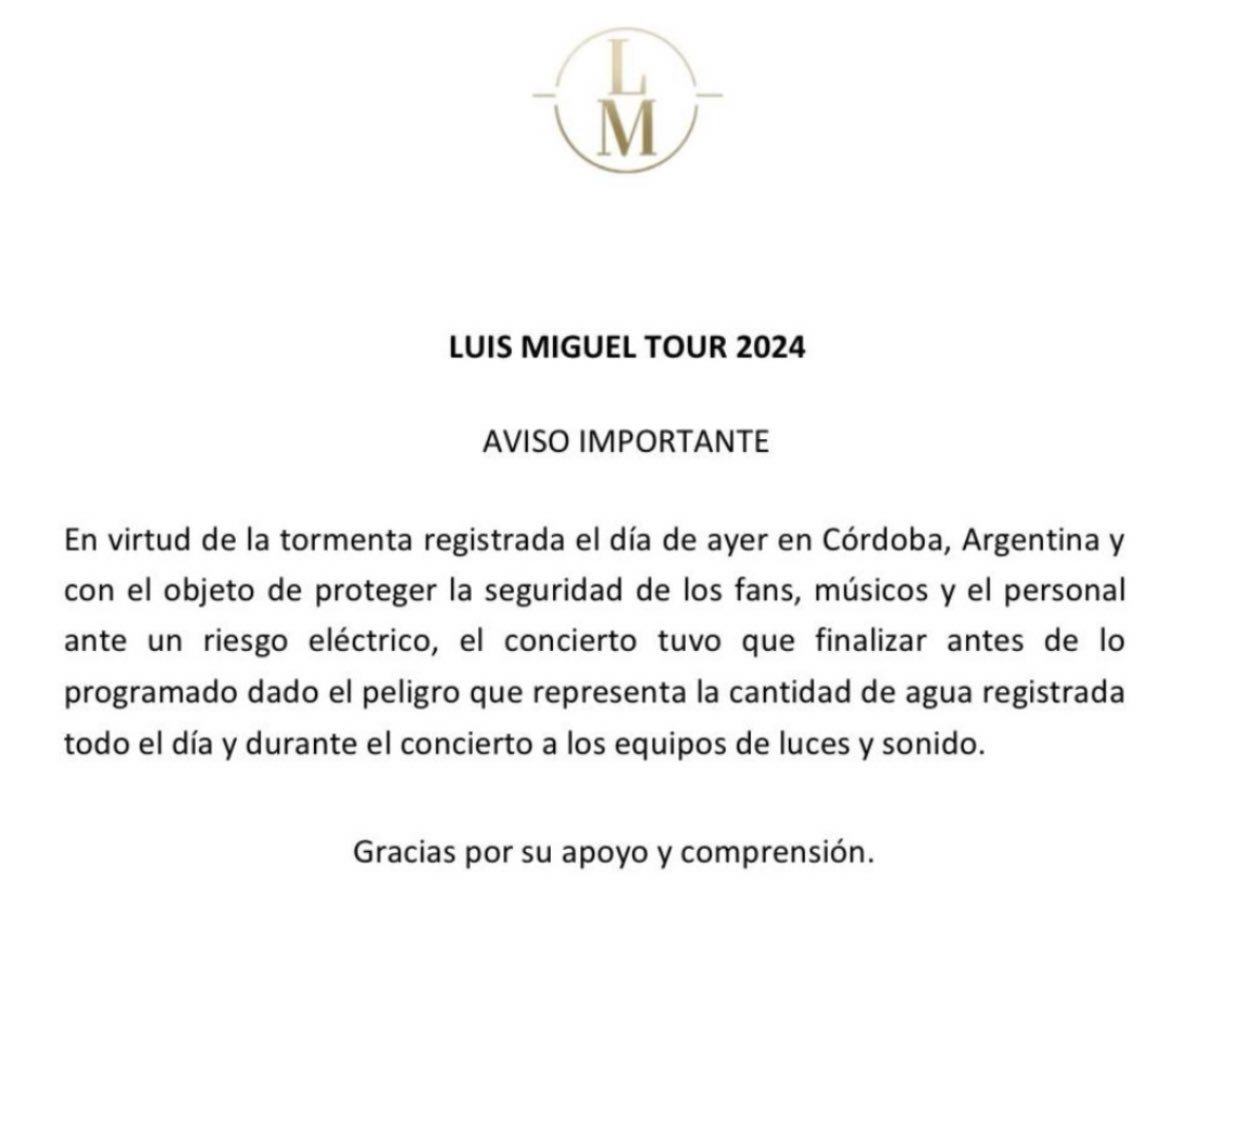 Luis Miguel en polémica: Fans en el concierto denuncian "estafa"